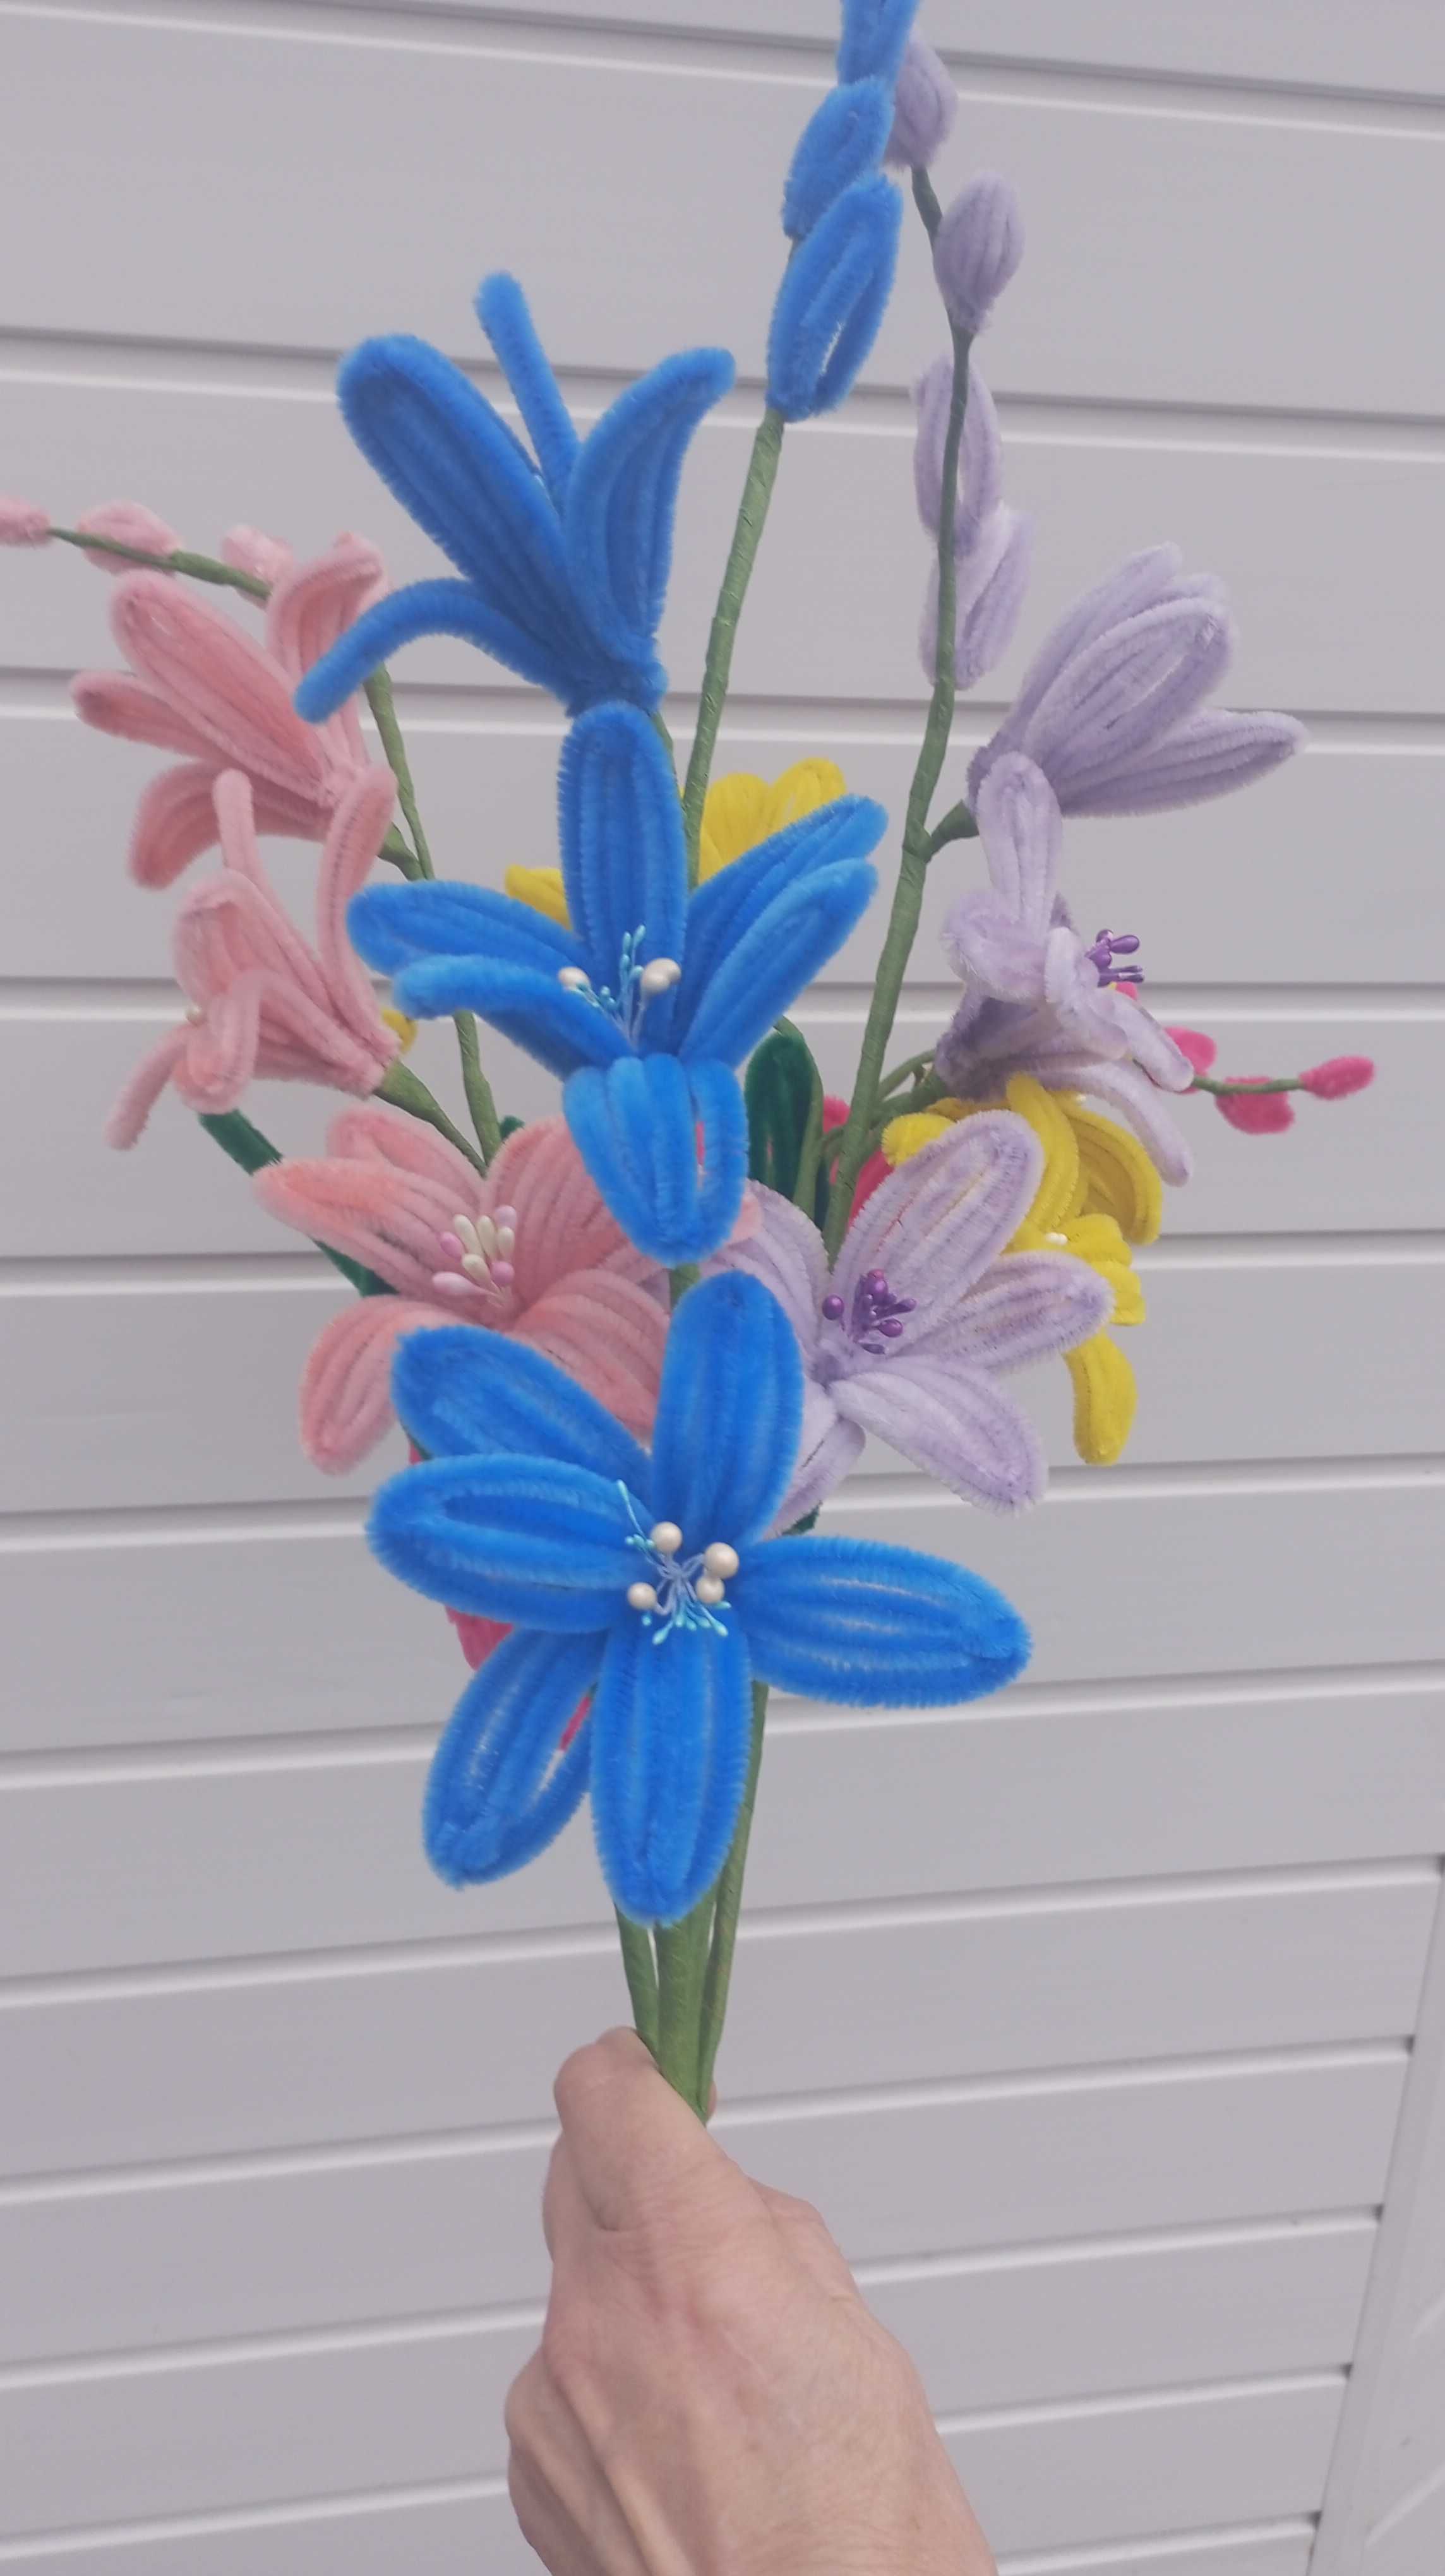 Цветок Ирис  из синельной проволоки в ассортименте. Цена  за 1 штуку